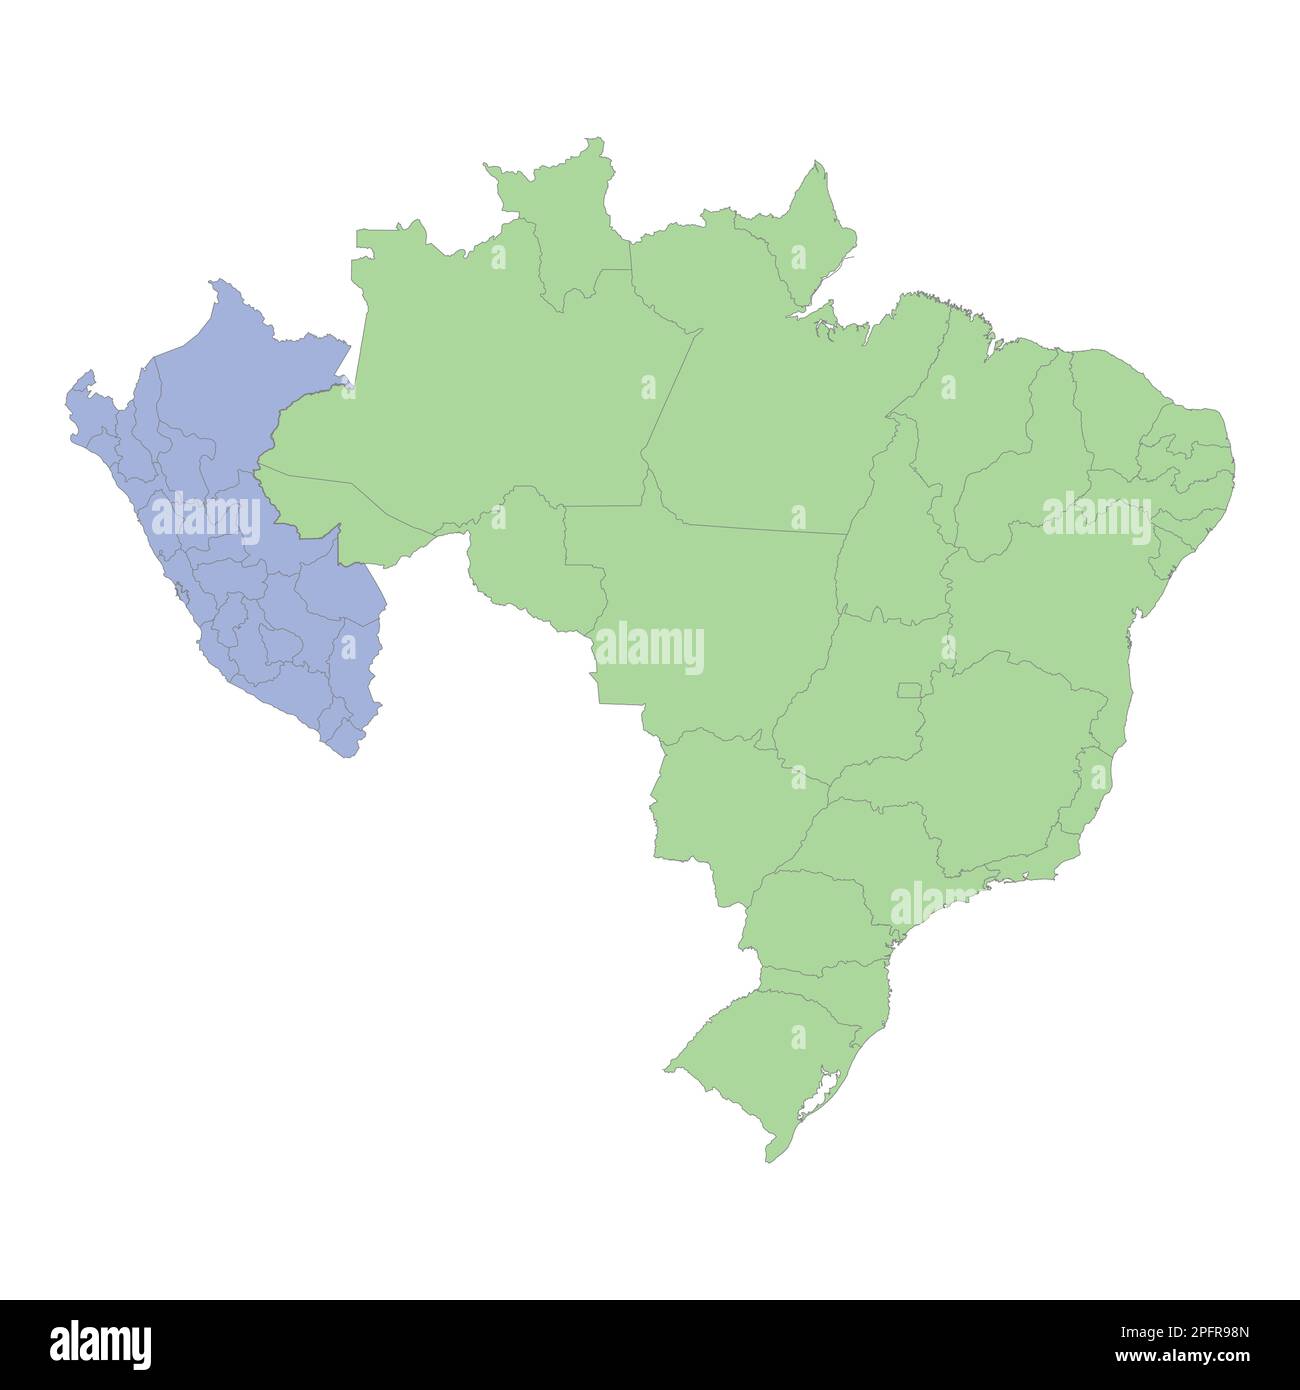 Mappa politica di alta qualità del Brasile e del Perù con i confini delle regioni o province. Illustrazione vettoriale Illustrazione Vettoriale